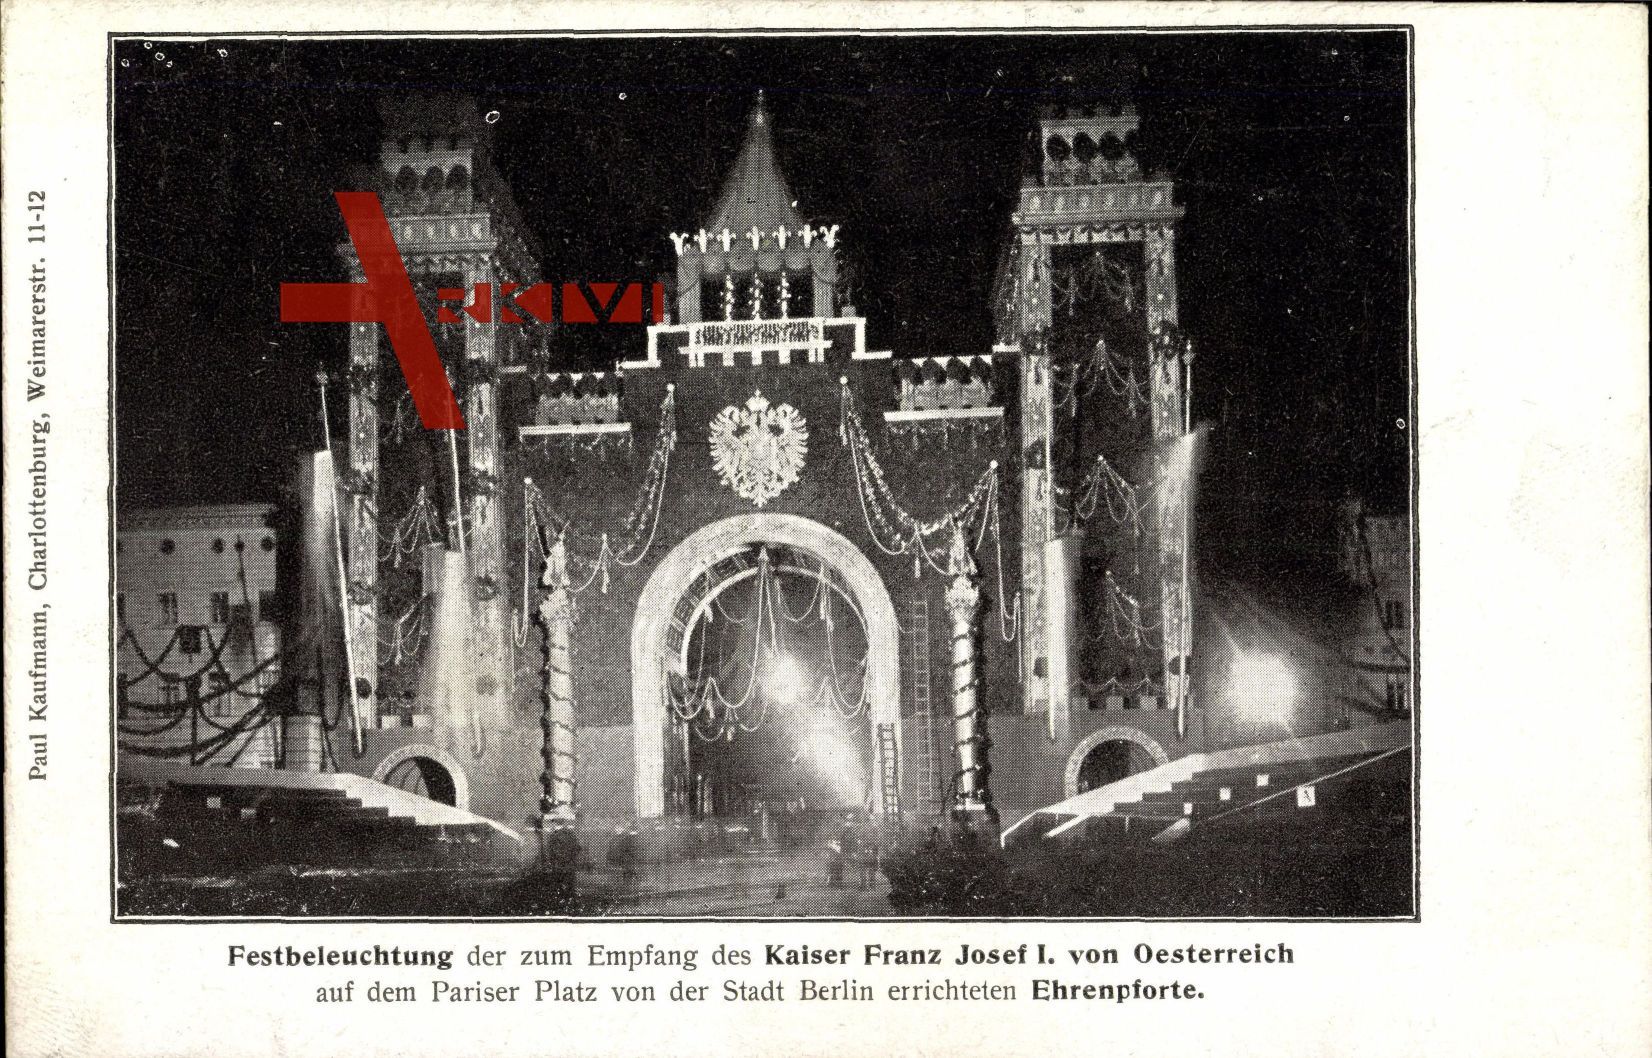 Berlin, Festbeleuchtung zum Empfang, Kaiser Franz Josef I. von Österreich